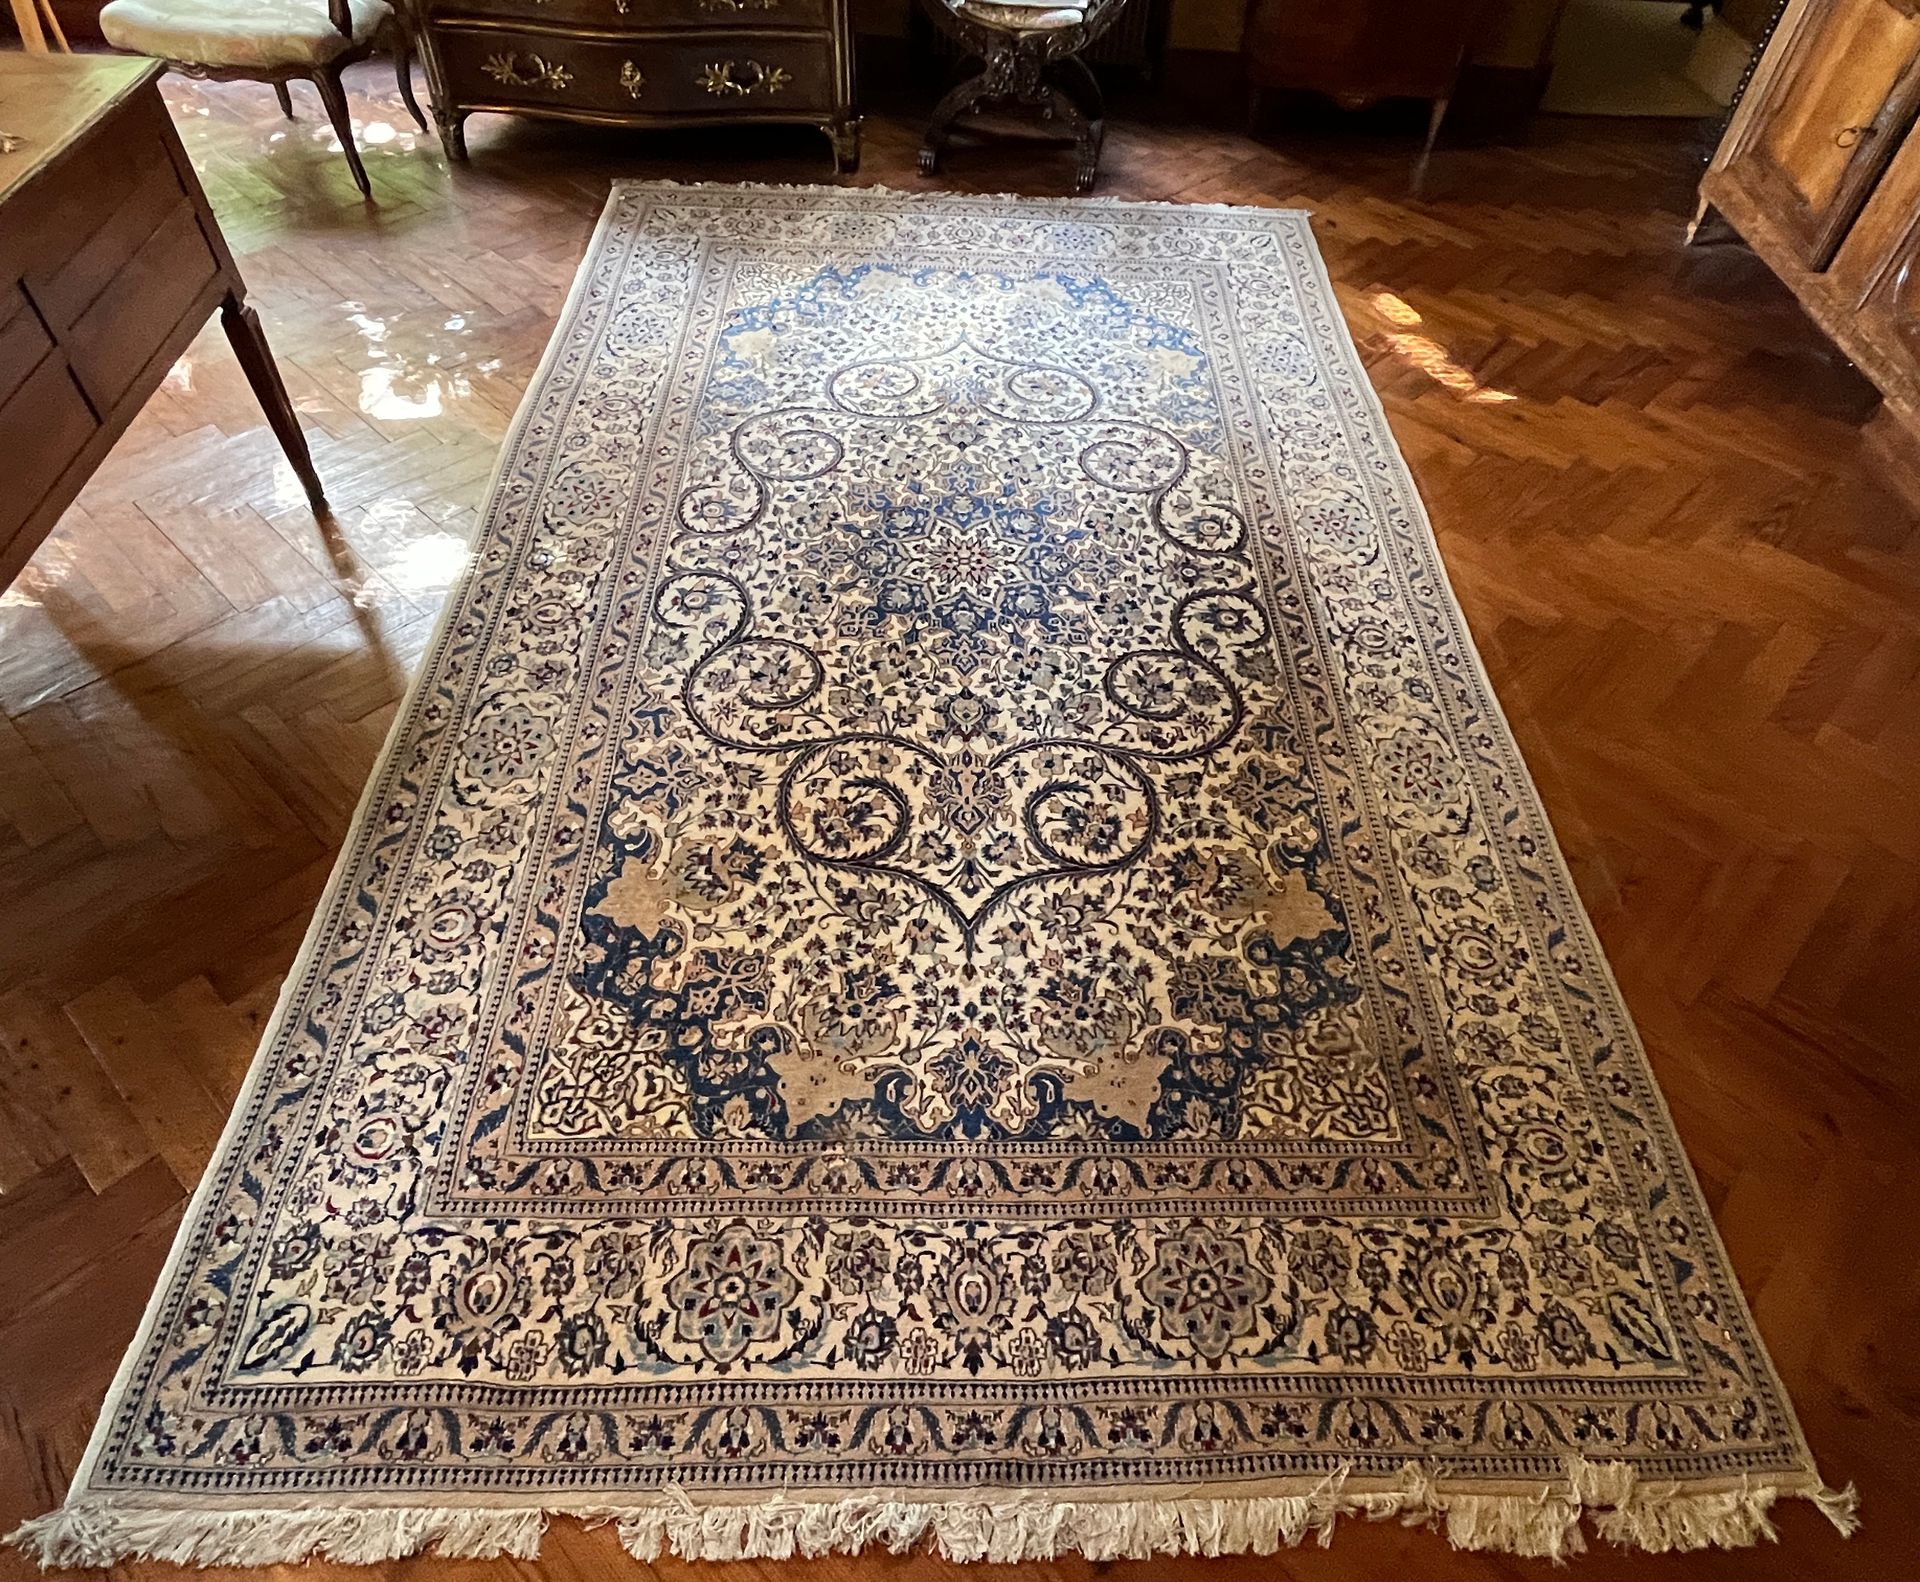 Null 84. Großer persischer Teppich, MELAHIR

Wolle und Seide

Ornamental mit Ran&hellip;